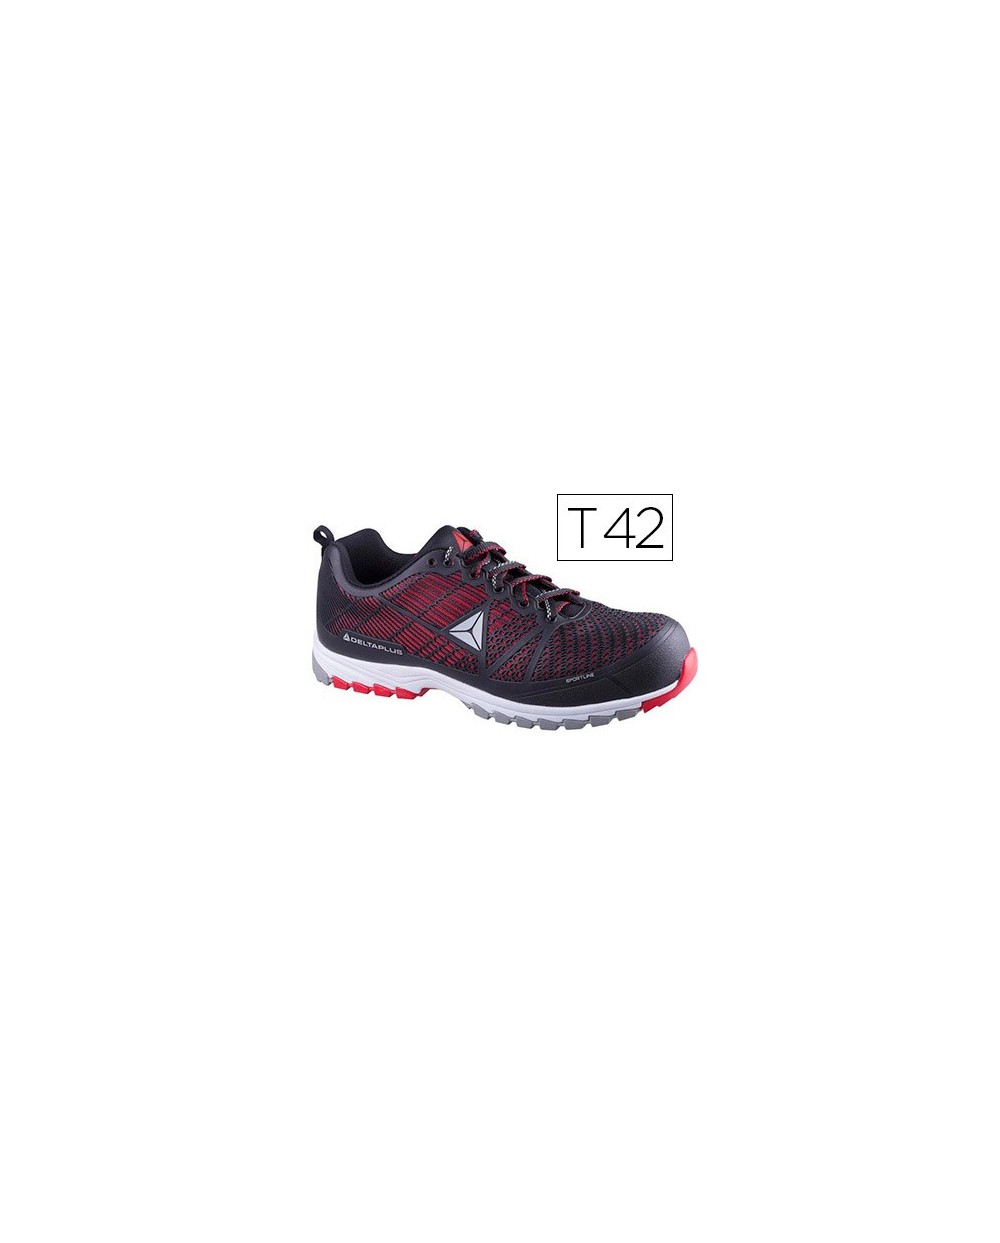 Zapatos de seguridad deltaplus de poliuretano y malla aireada s1p negro y rojo talla 42